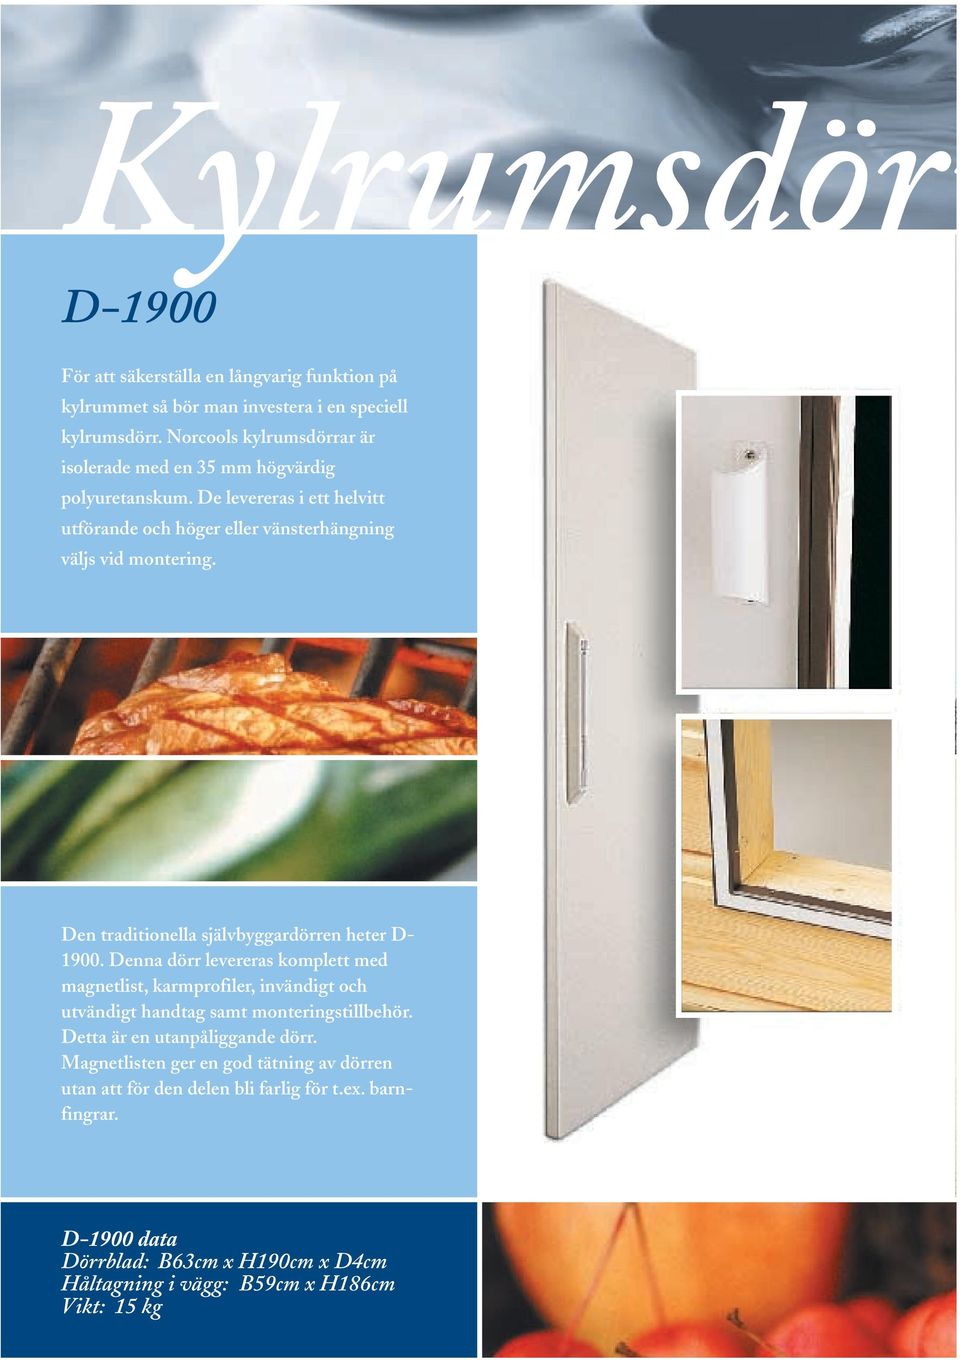 Den traditionella självbyggardörren heter D- 1900. Denna dörr levereras komplett med magnetlist, karmprofiler, invändigt och utvändigt handtag samt monteringstillbehör.